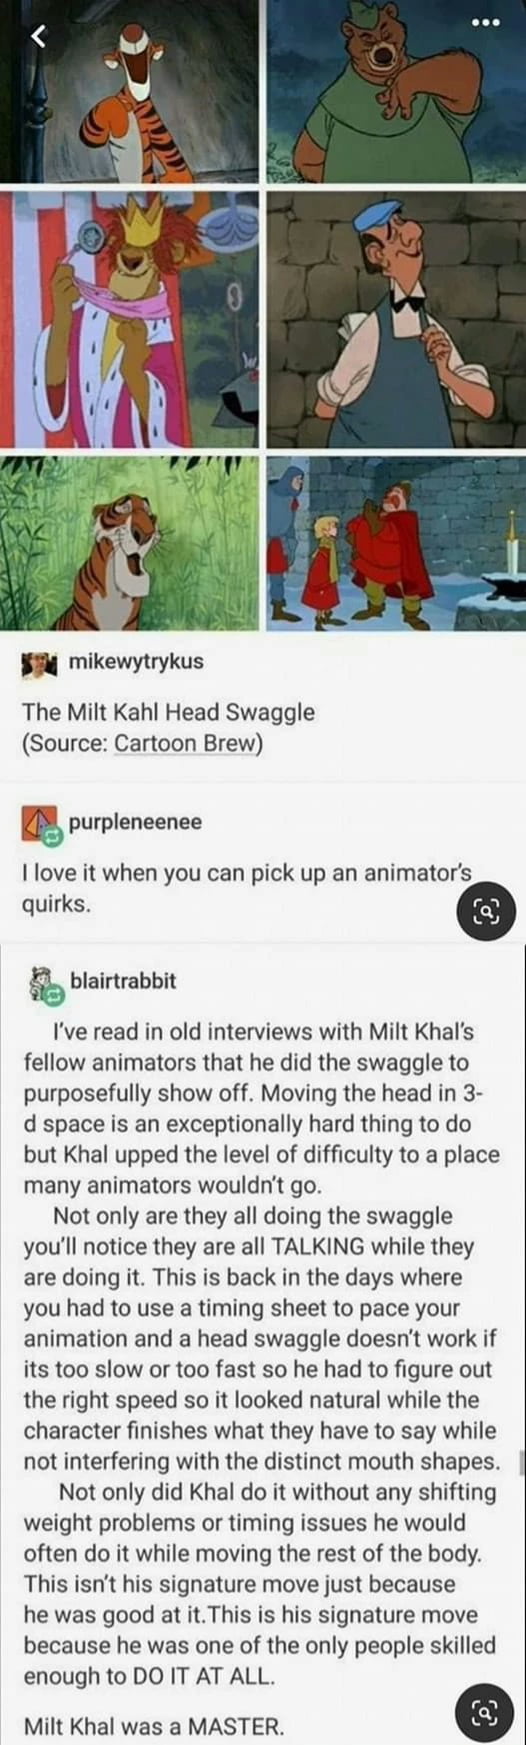 Milt Khal was a master